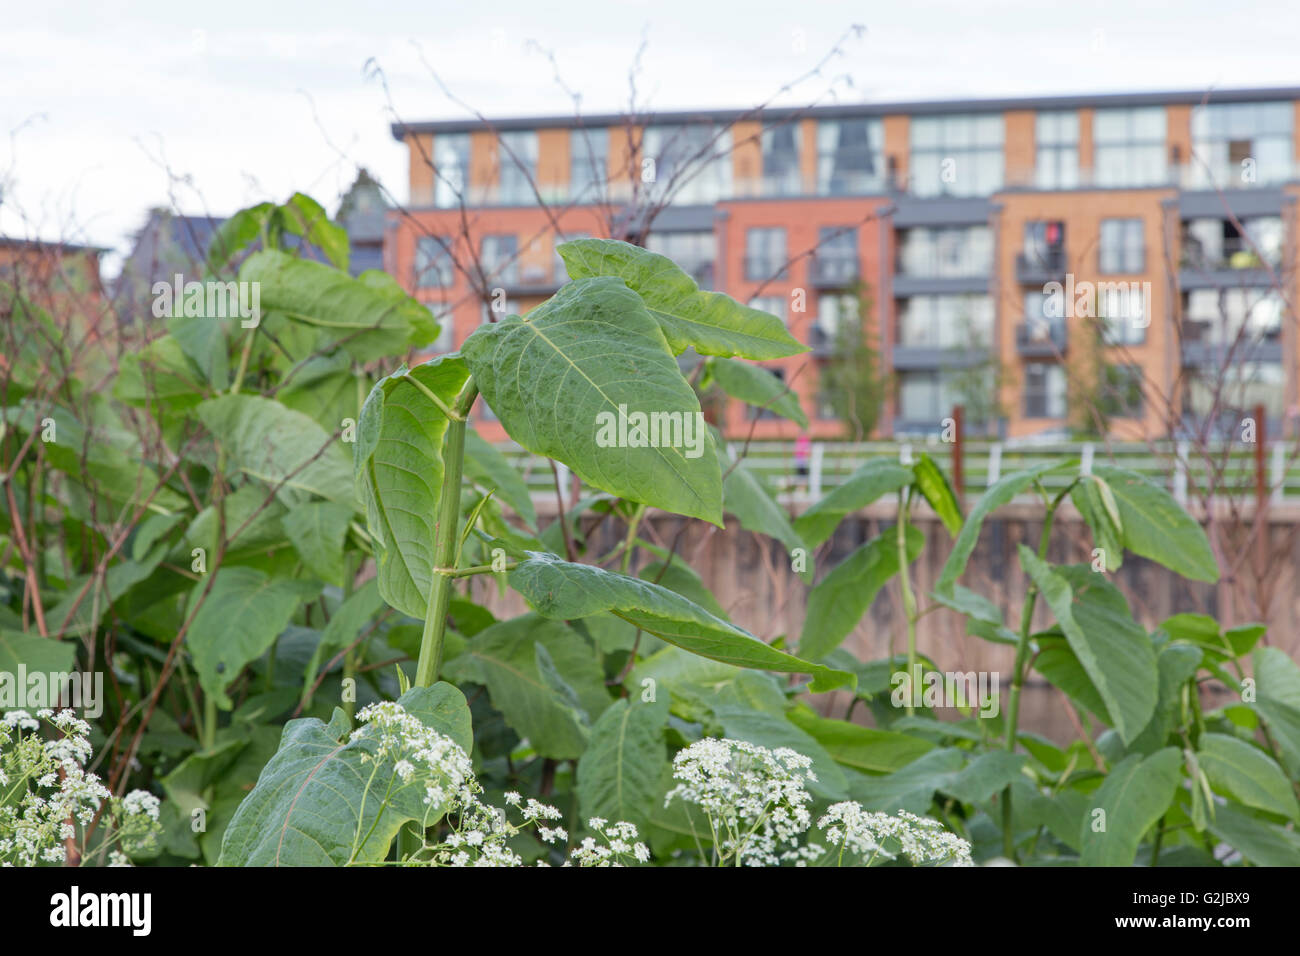 Japanischer Staudenknöterich (Fallopia Japonica) wächst in eine urbane Lage, England, UK Stockfoto